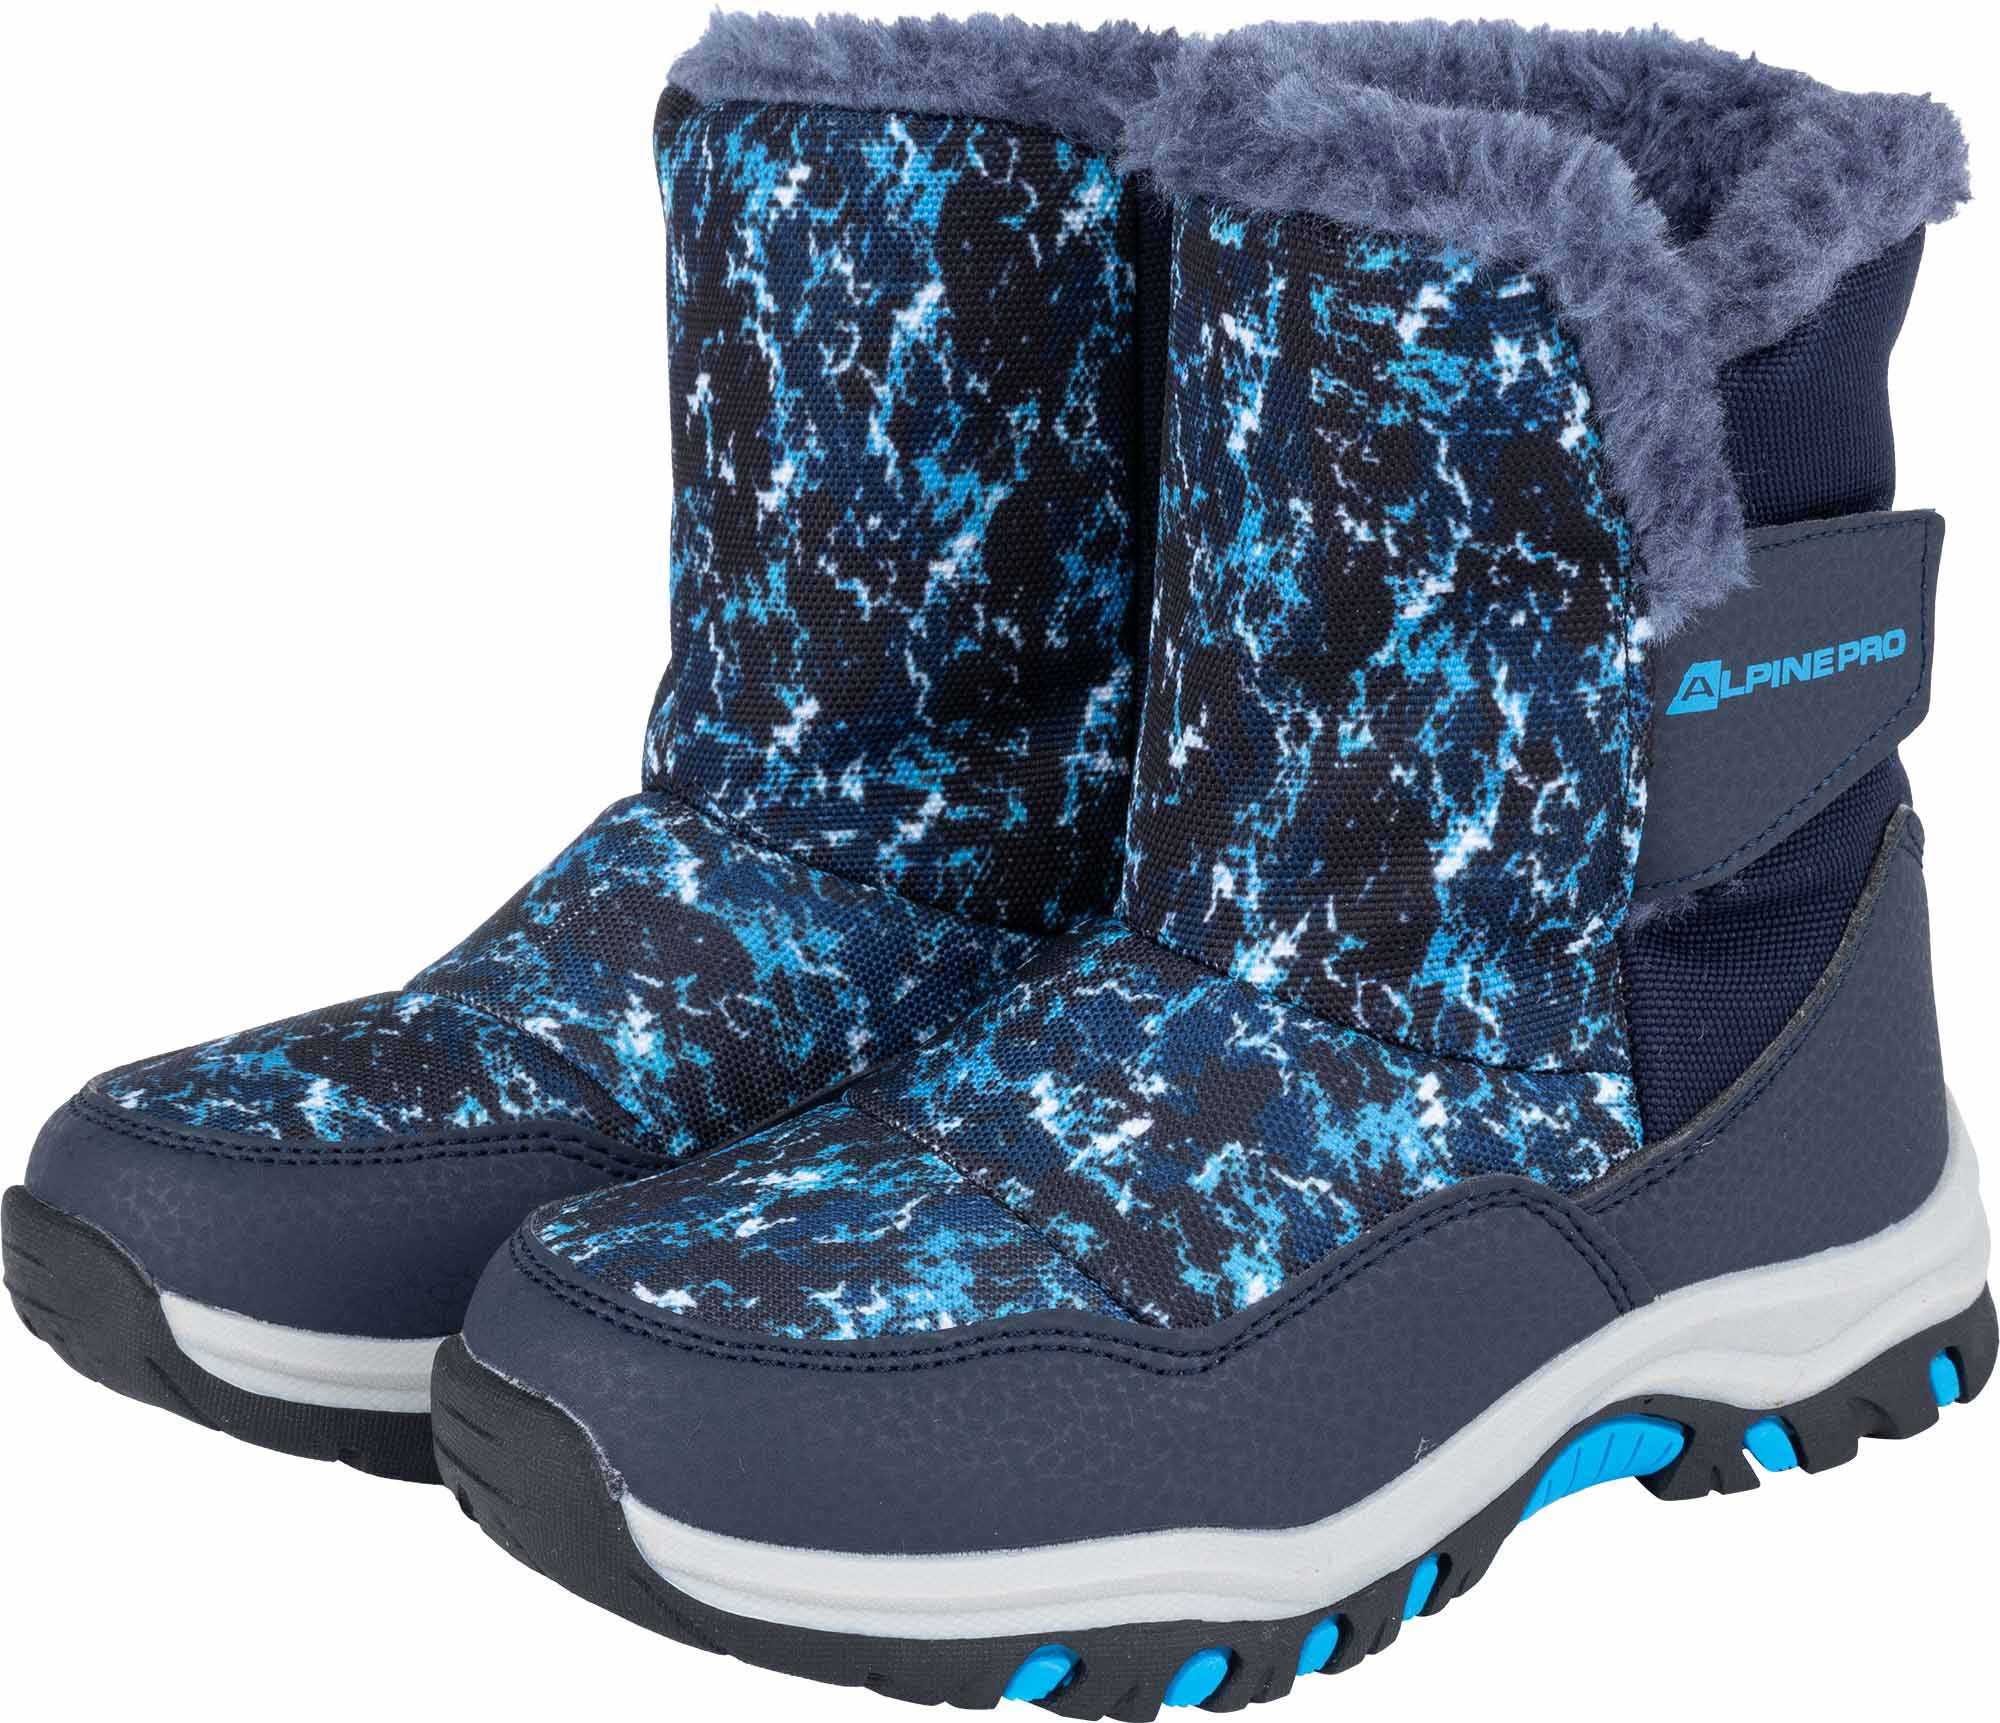 Children's winter boots